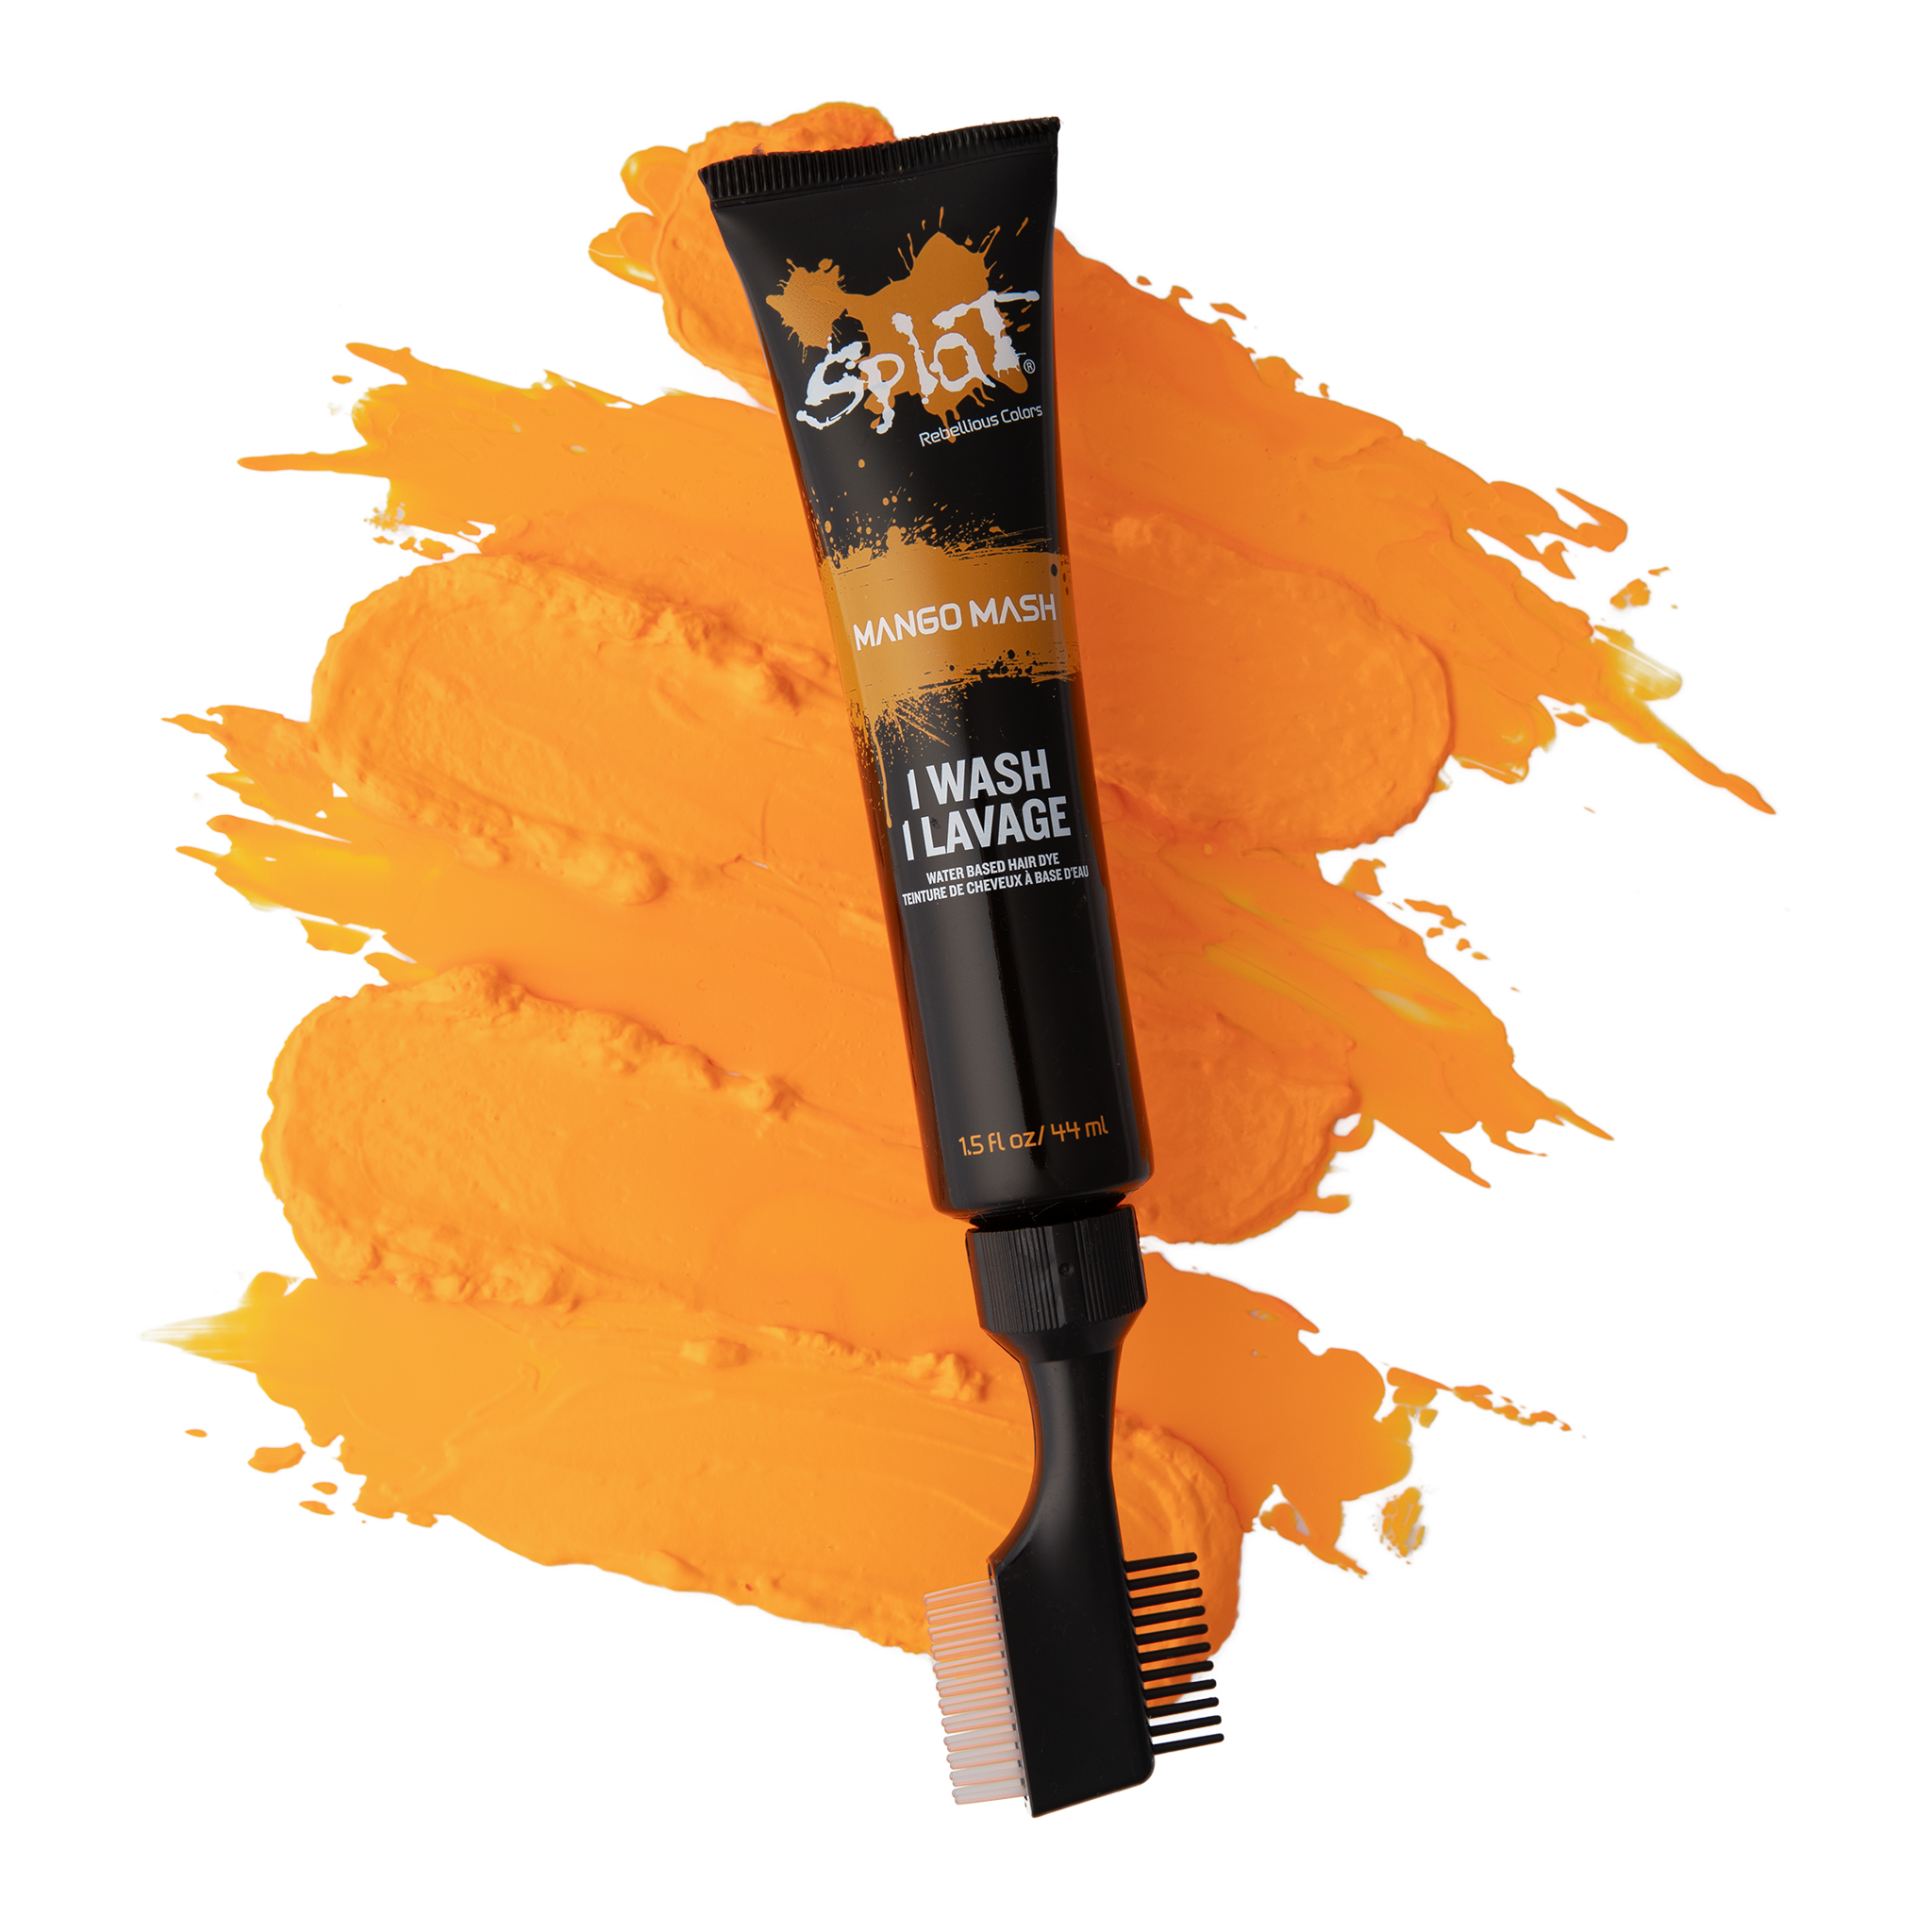 Mango Mash: Orange One-Wash Temporary Hair Dye